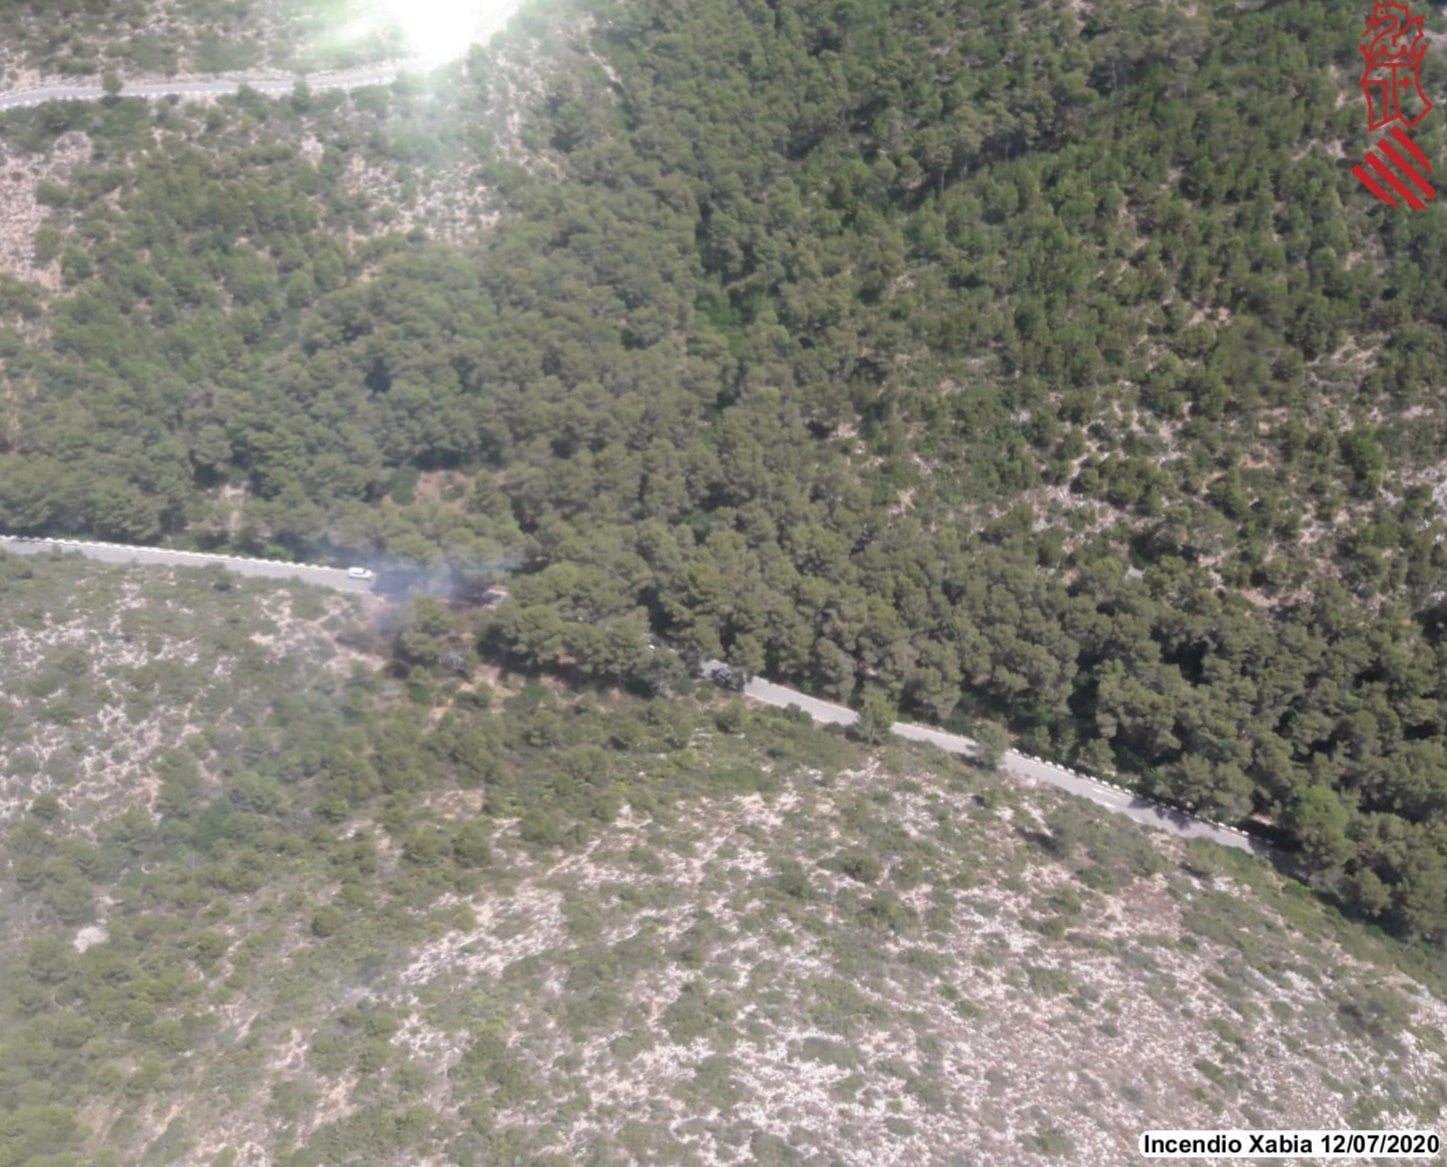 Imagen aérea tomada a las 15:20 horas del incendio en la Granadella